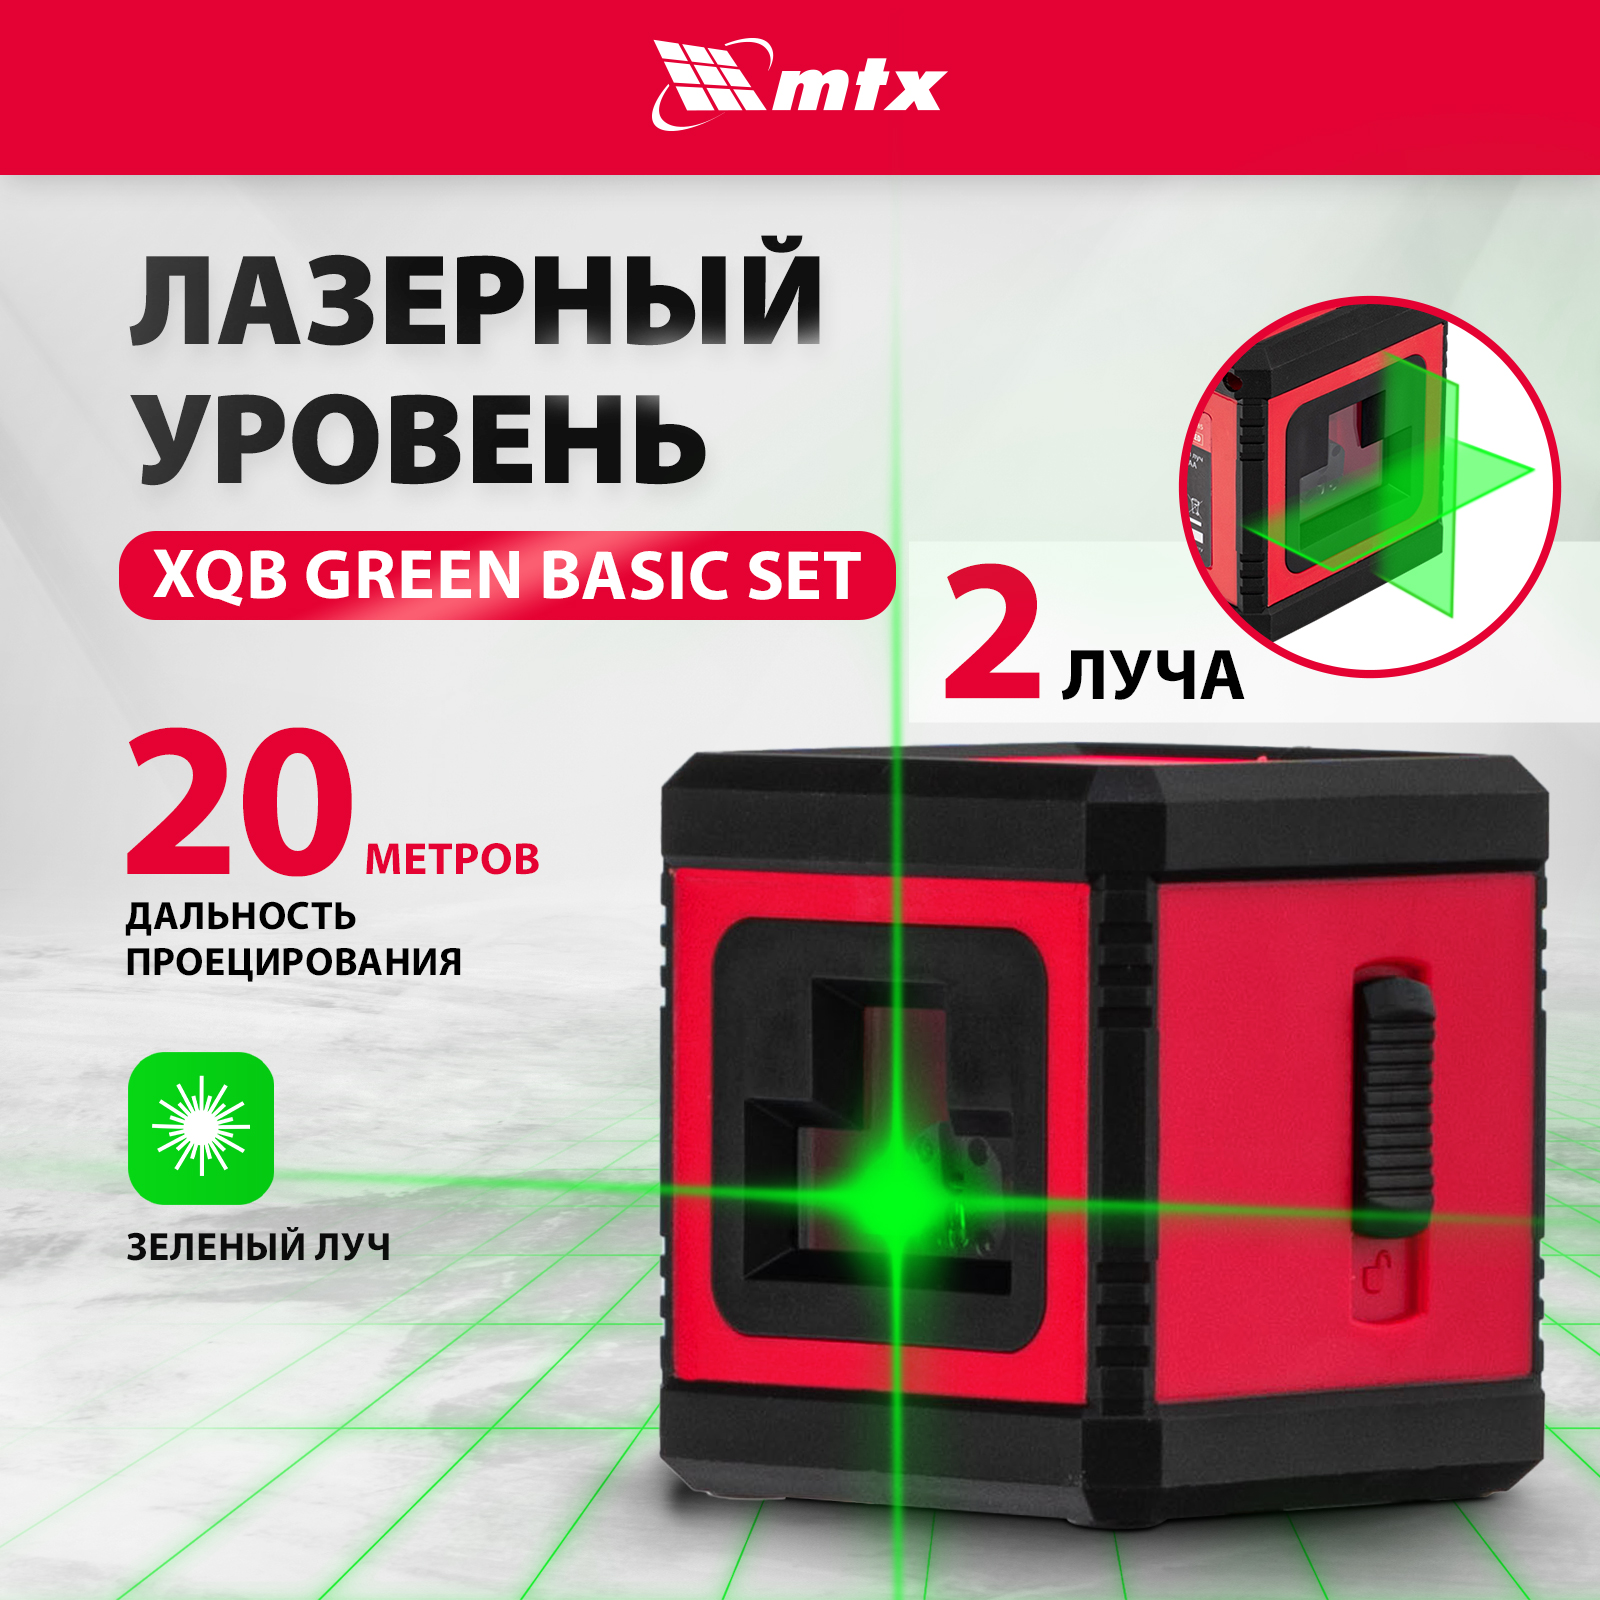 очный горшок live in green лаура 23982 красный Лазерный уровень MTX XQB GREEN Basic SET, 20 м, зеленый луч, батарейки, резьба 1/4